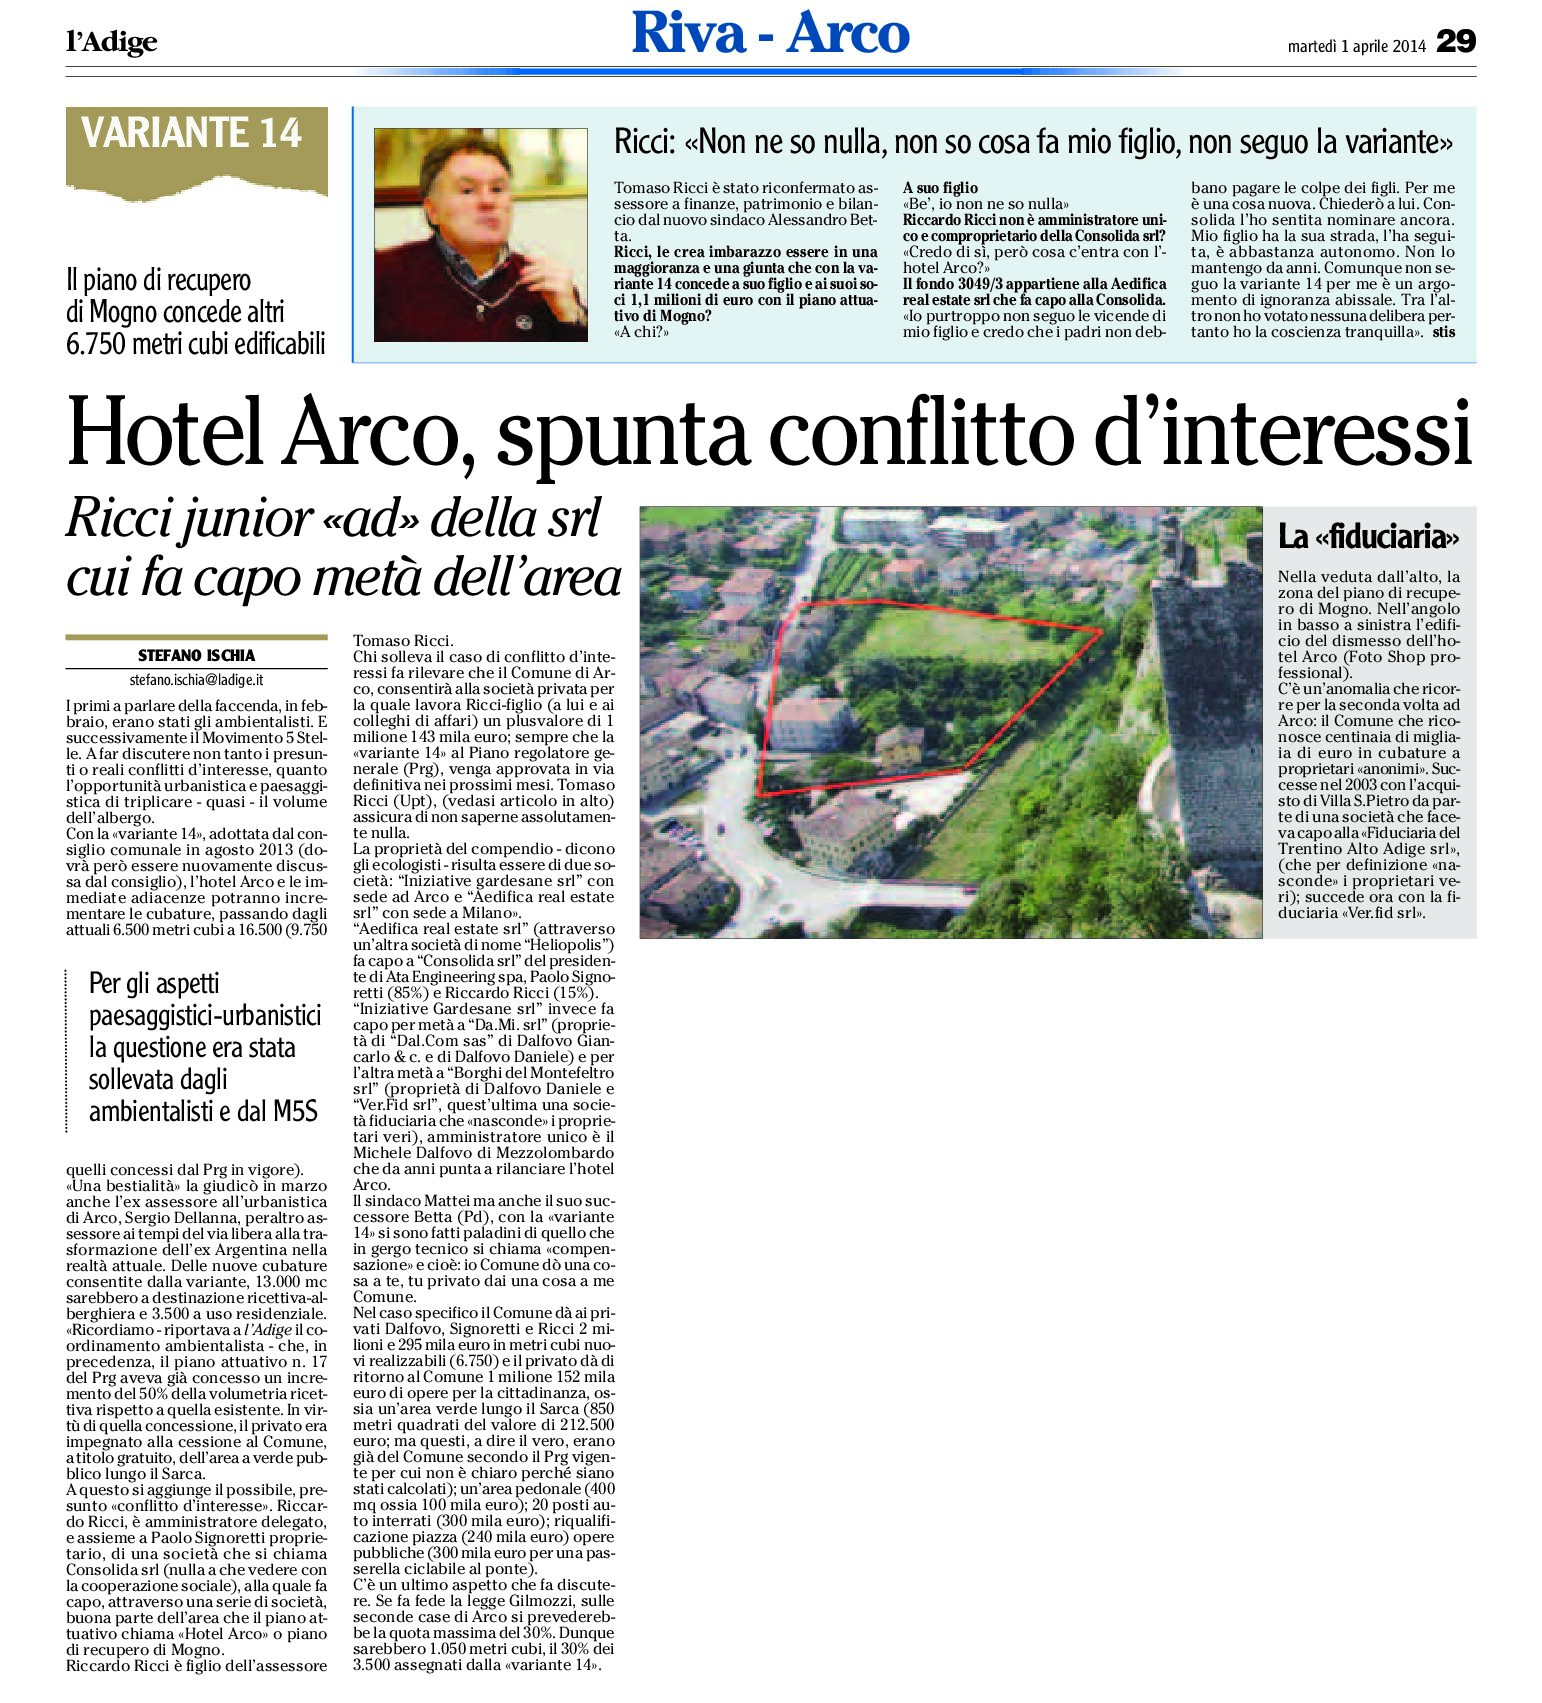 Hotel Arco, spunta il conflitto d’interessi